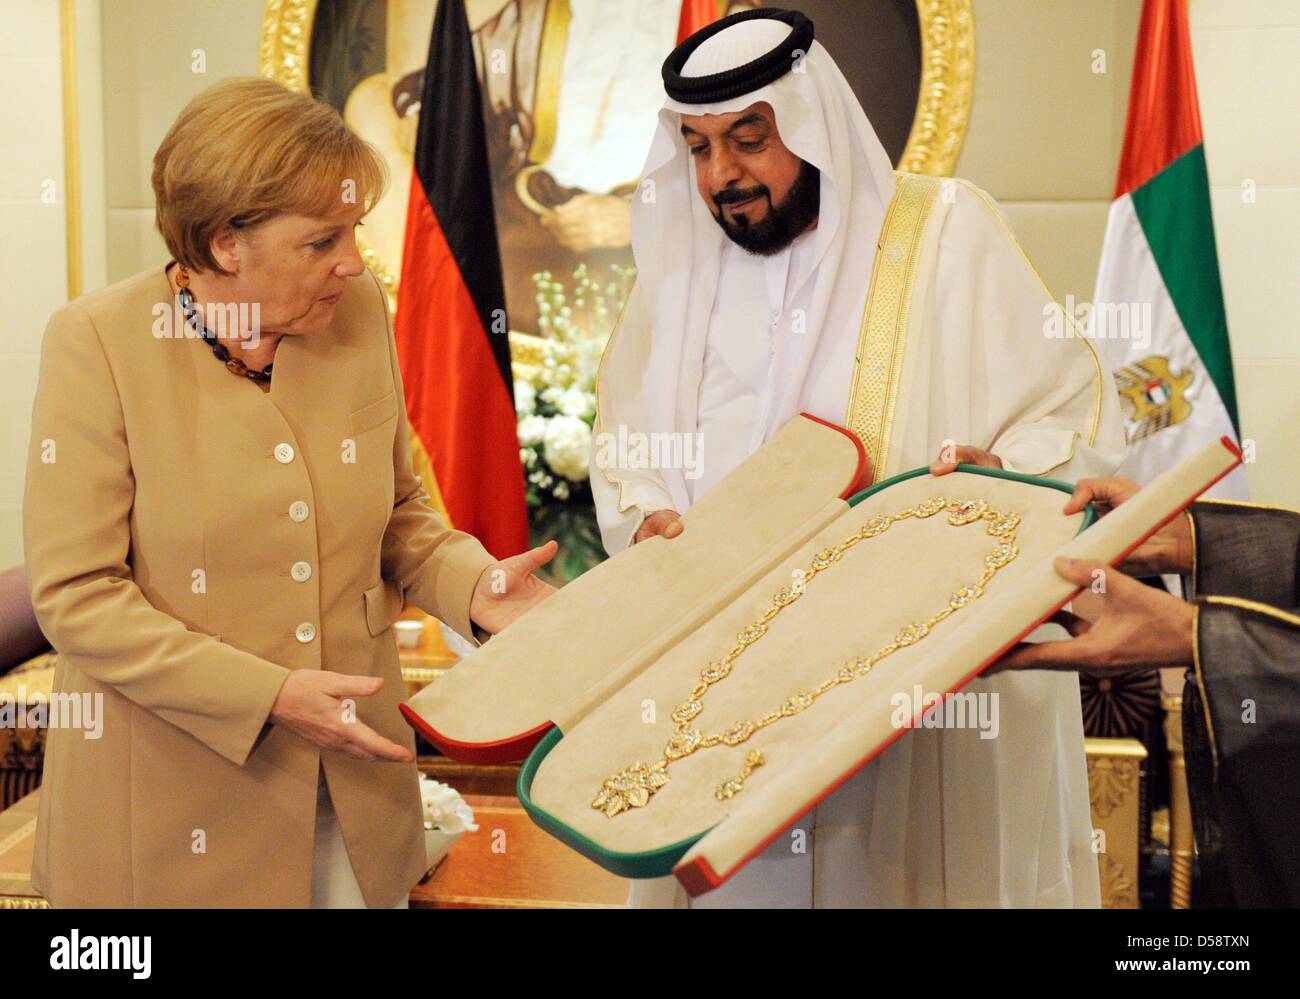 La chancelière allemande Angela Merkel reçoit le Cheikh a dit le président de l'UAE médaille par Cheikh Khalifa bin Zayed Al Nahyan, Président de l'Al Mushrif's Palace à Abu Dhabi, Emirats arabes unis (EAU), 25 mai 2010. Merkel se rendra dans quatre des six pays du Conseil de coopération du Golfe jusqu'au 27 mai 2010 pour améliorer les liens économiques et politiques. Poto : RAINER JENSEN Banque D'Images